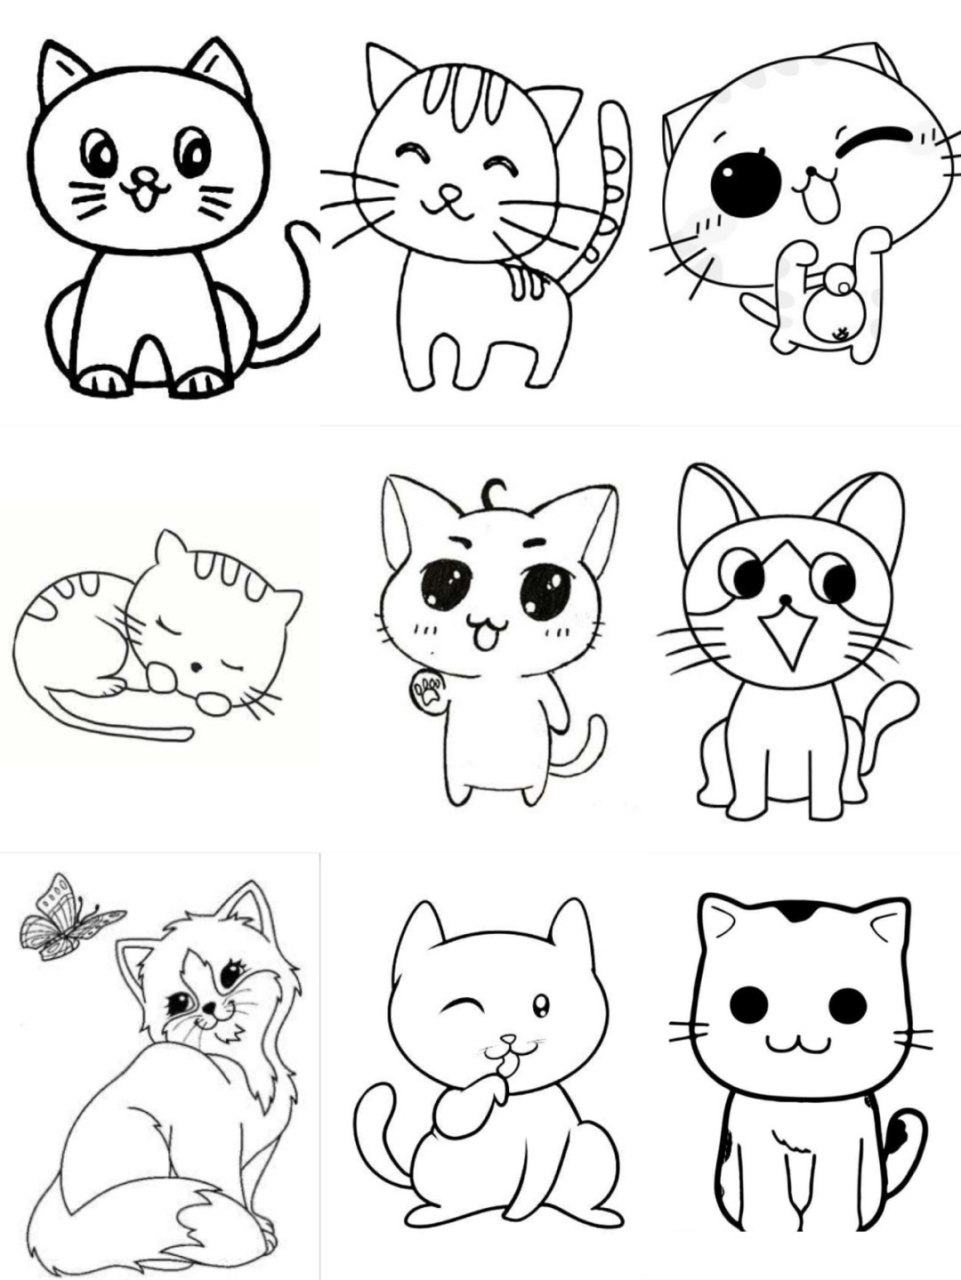 猫简笔画方法形态图片